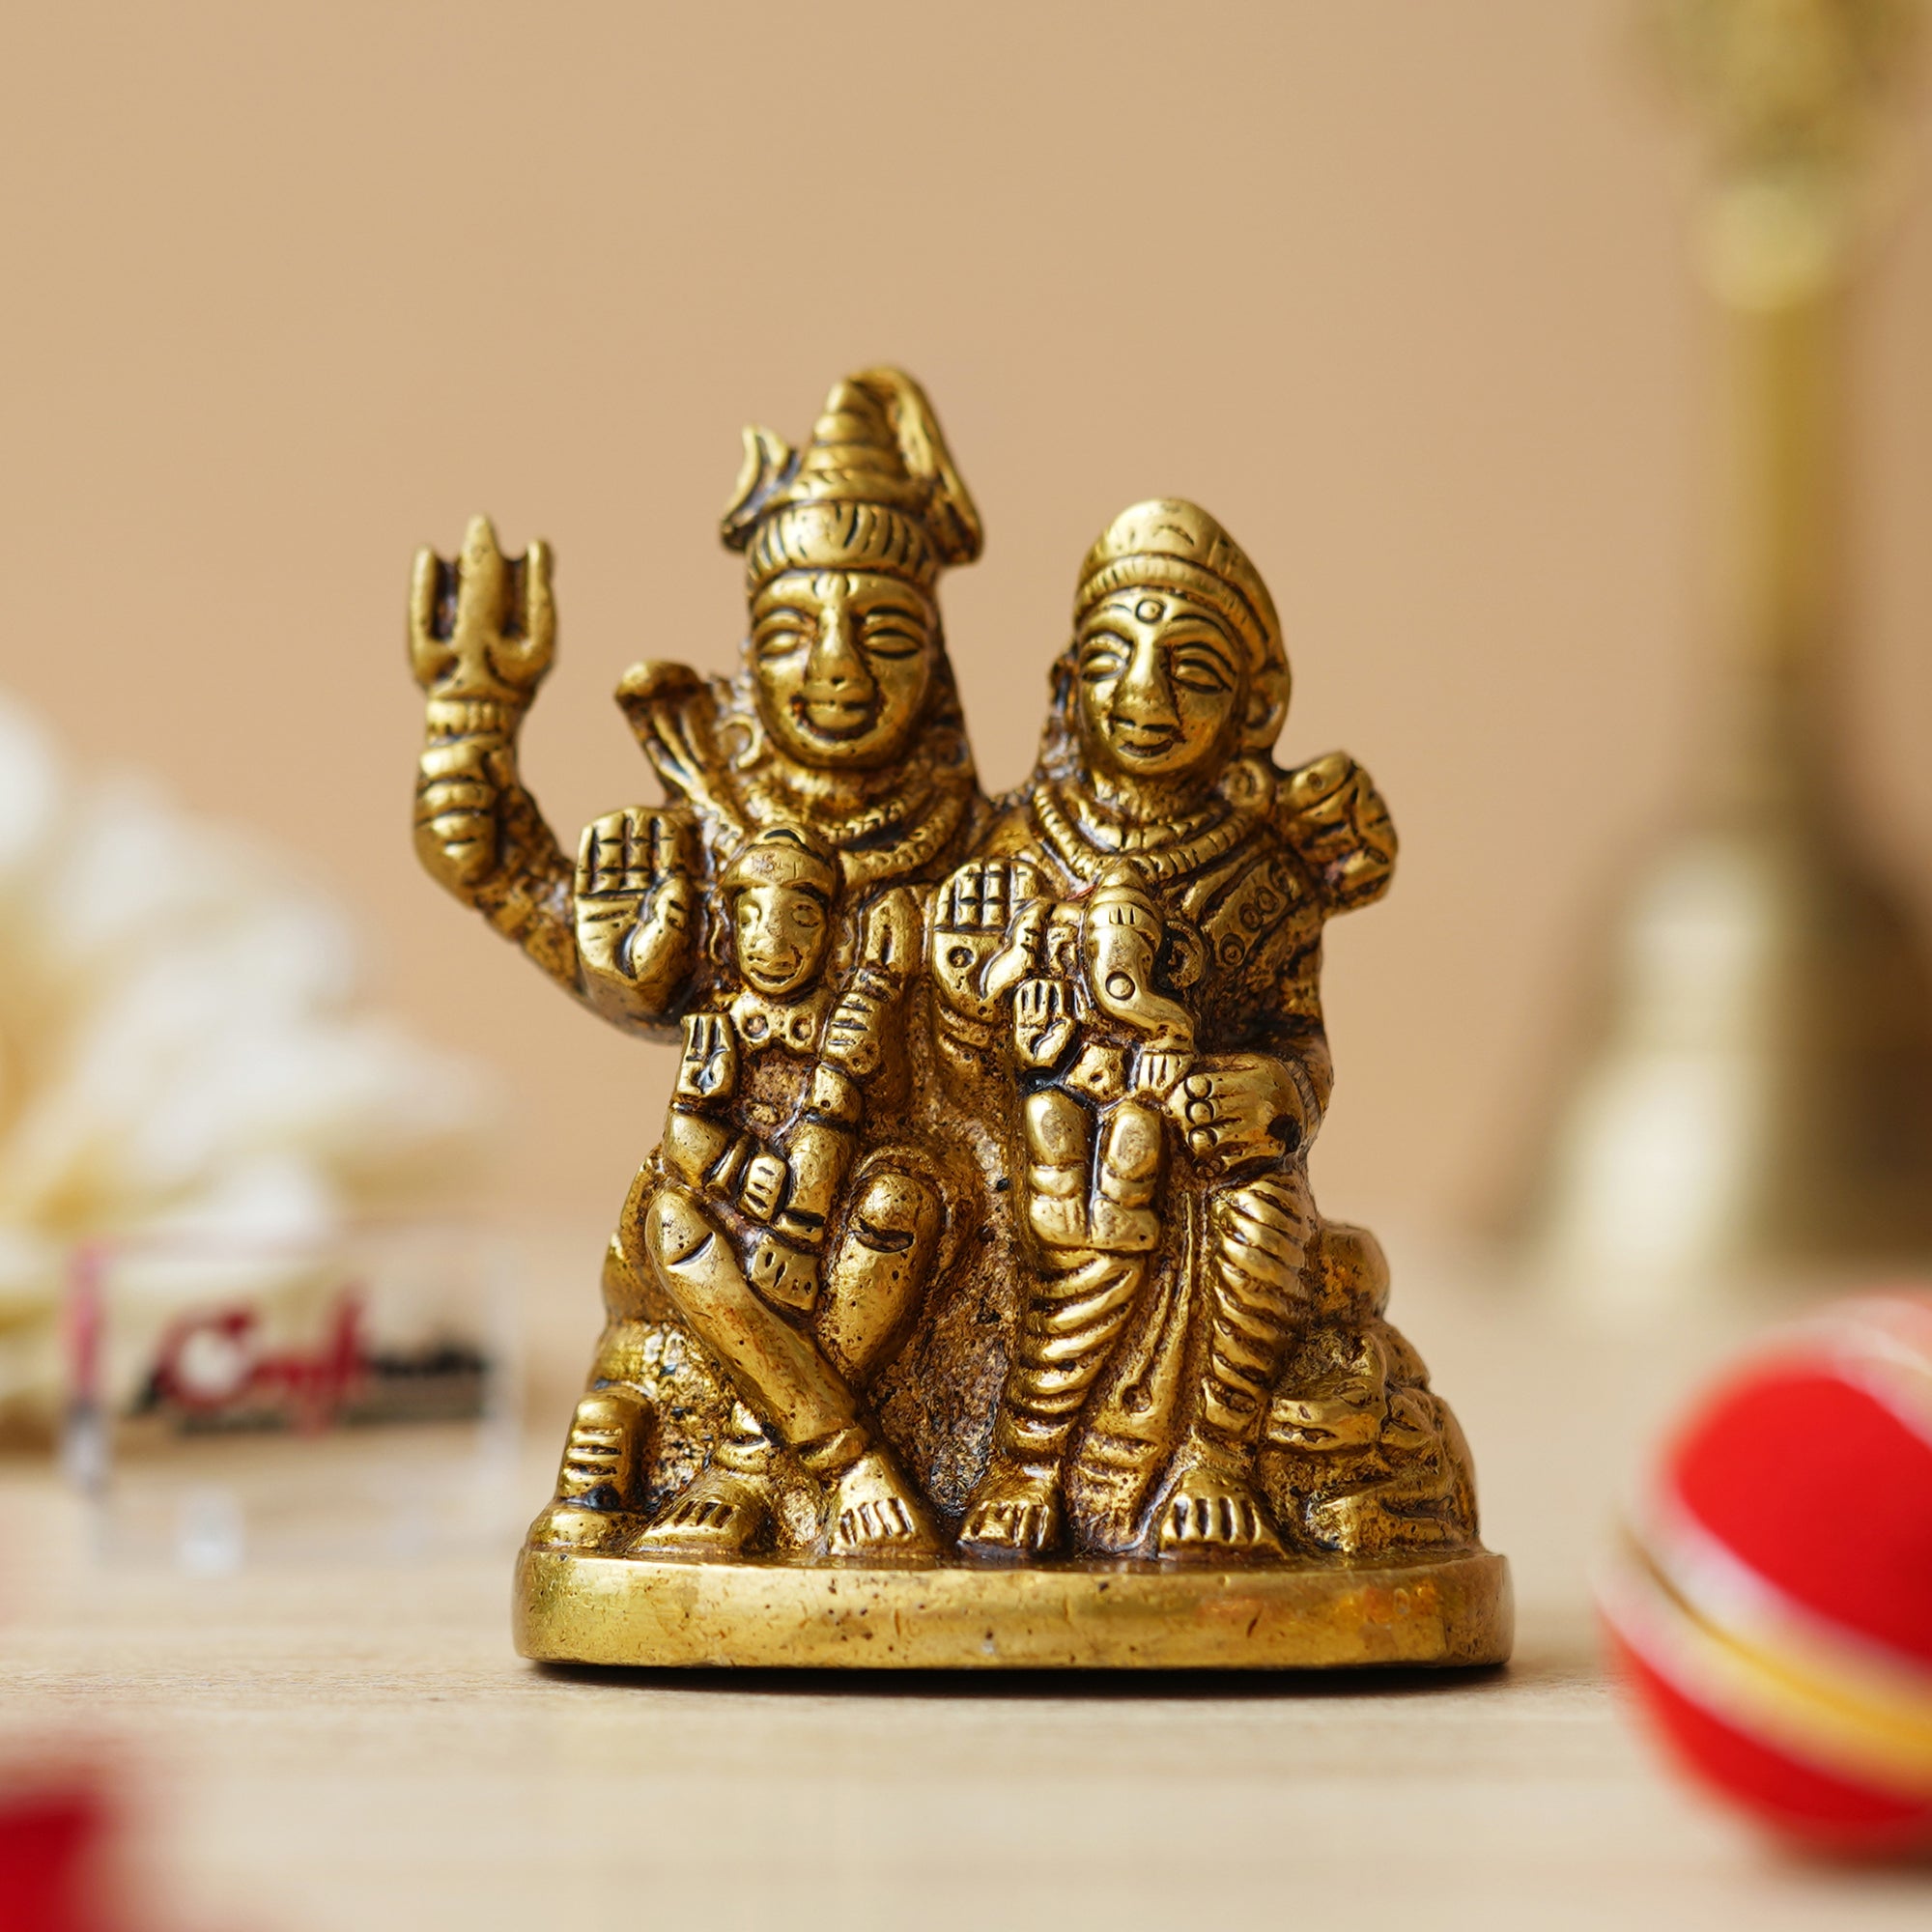 Golden Brass Shiv Parivar Murti Idol - Lord Shiva, Parvati, Ganesha, Kartikeya Statue for Home Temple, Car Dashboard 4